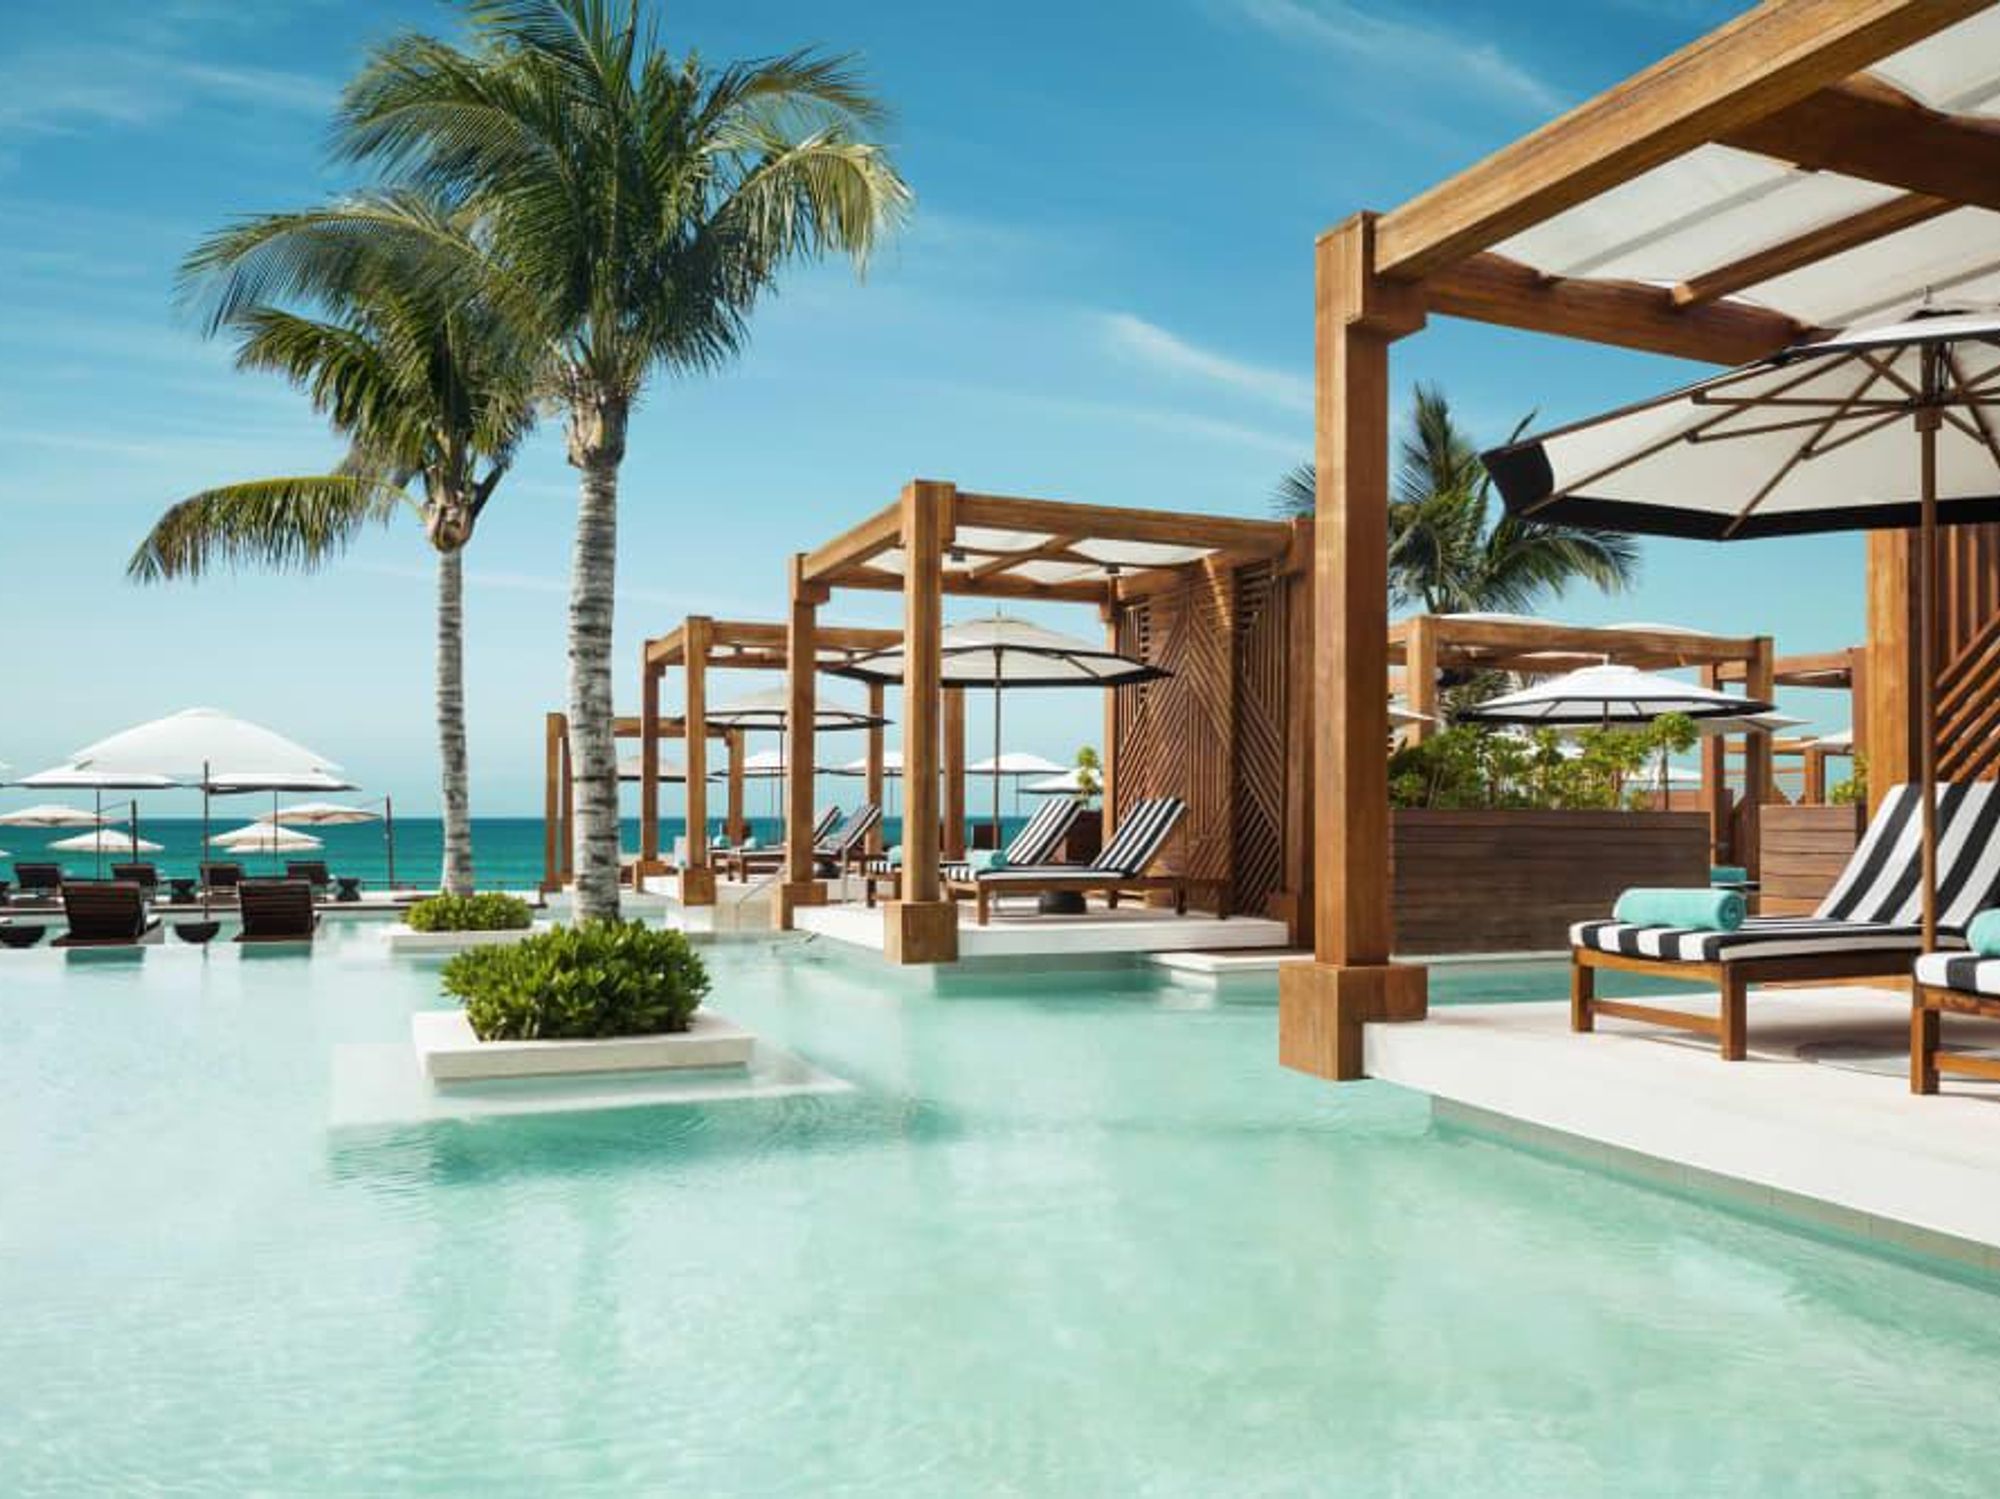 Grand Luxxe Vidanta Resort in Mexico